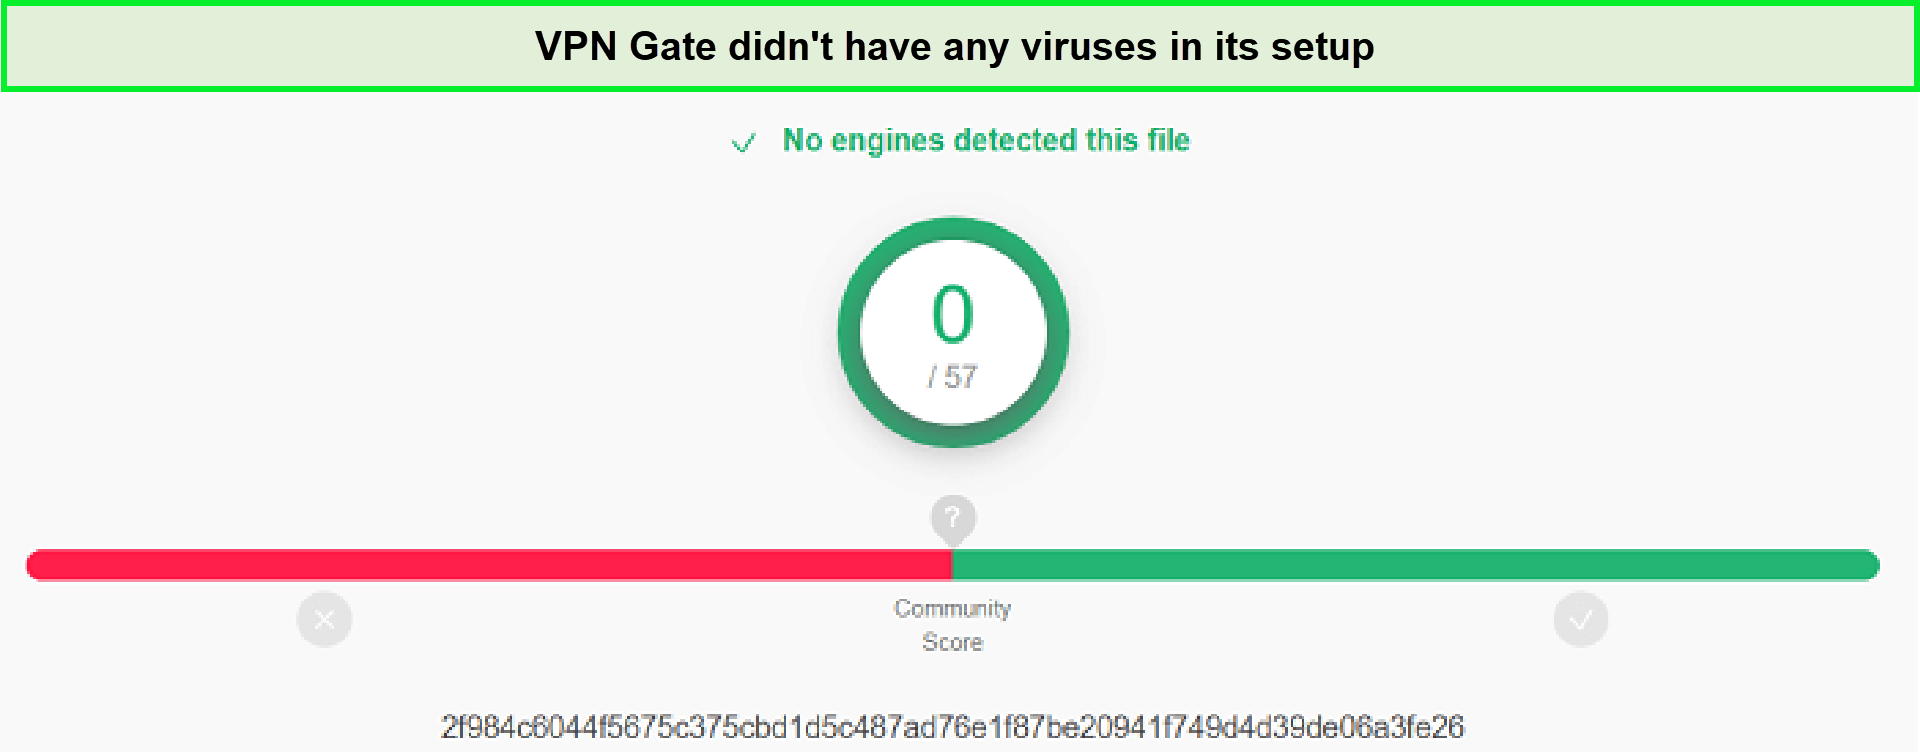 Virus-Test-in-Japan-VPN-Gate